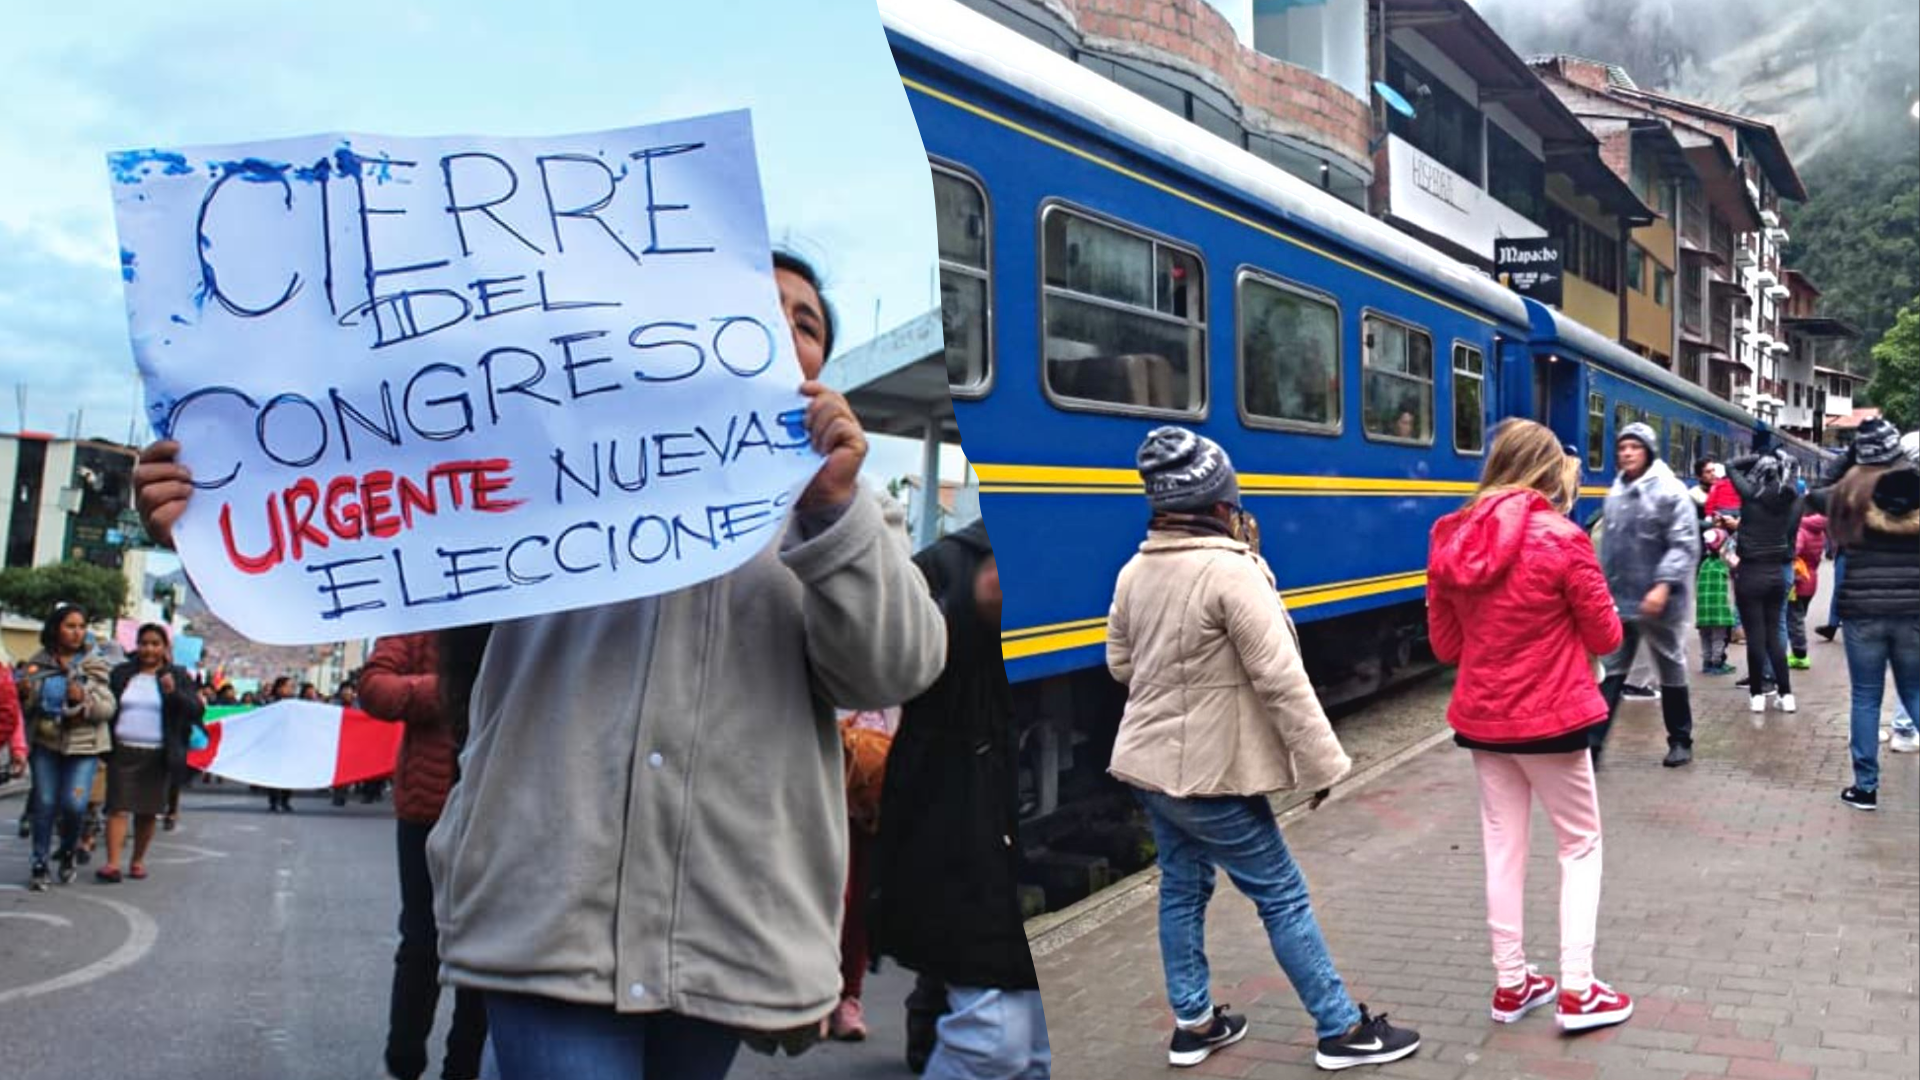 Últimas noticias en Cusco: turistas varados, protestas y manifestaciones por crisis política en Perú. (Noticias Ser / Andina)